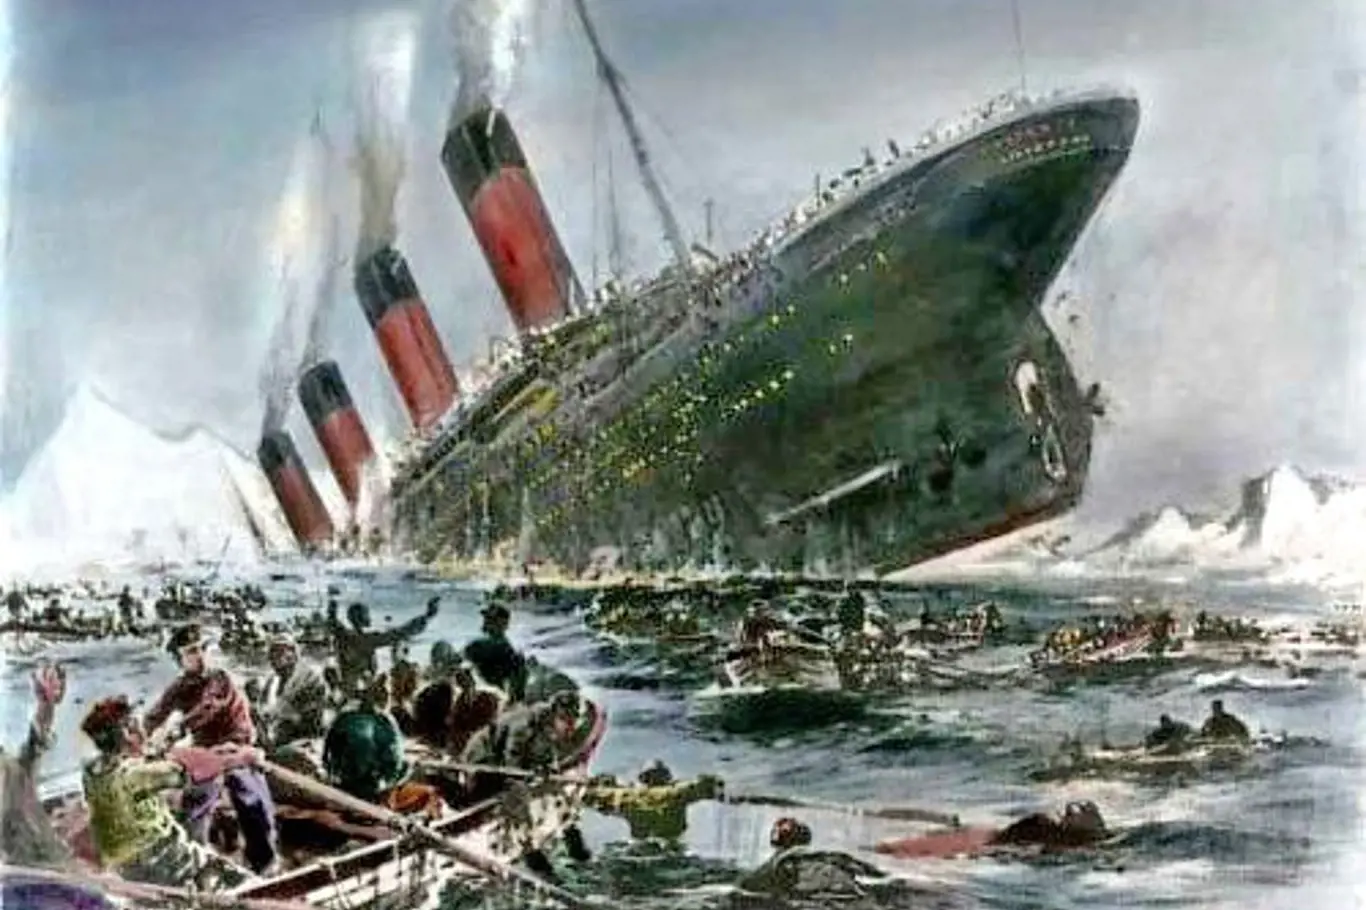 Co dělali lidé na palubě? Jaké byly jejich pocity? Vše spláchl oceán.Kolorovaná kresba potápějícího se Titanicu.